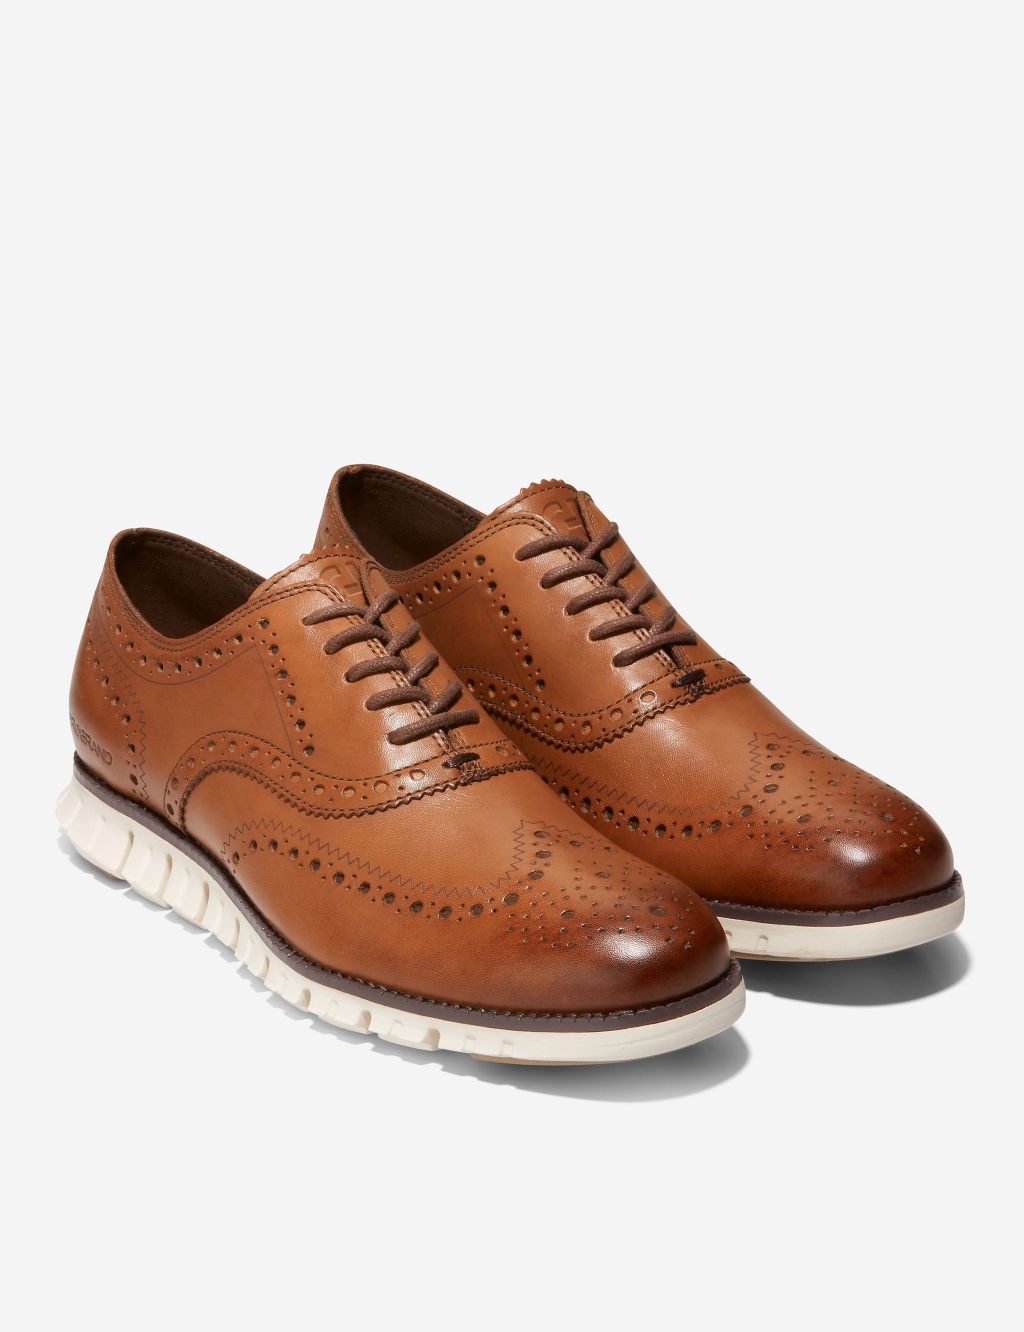 Men's Wingtip Oxford Shoes